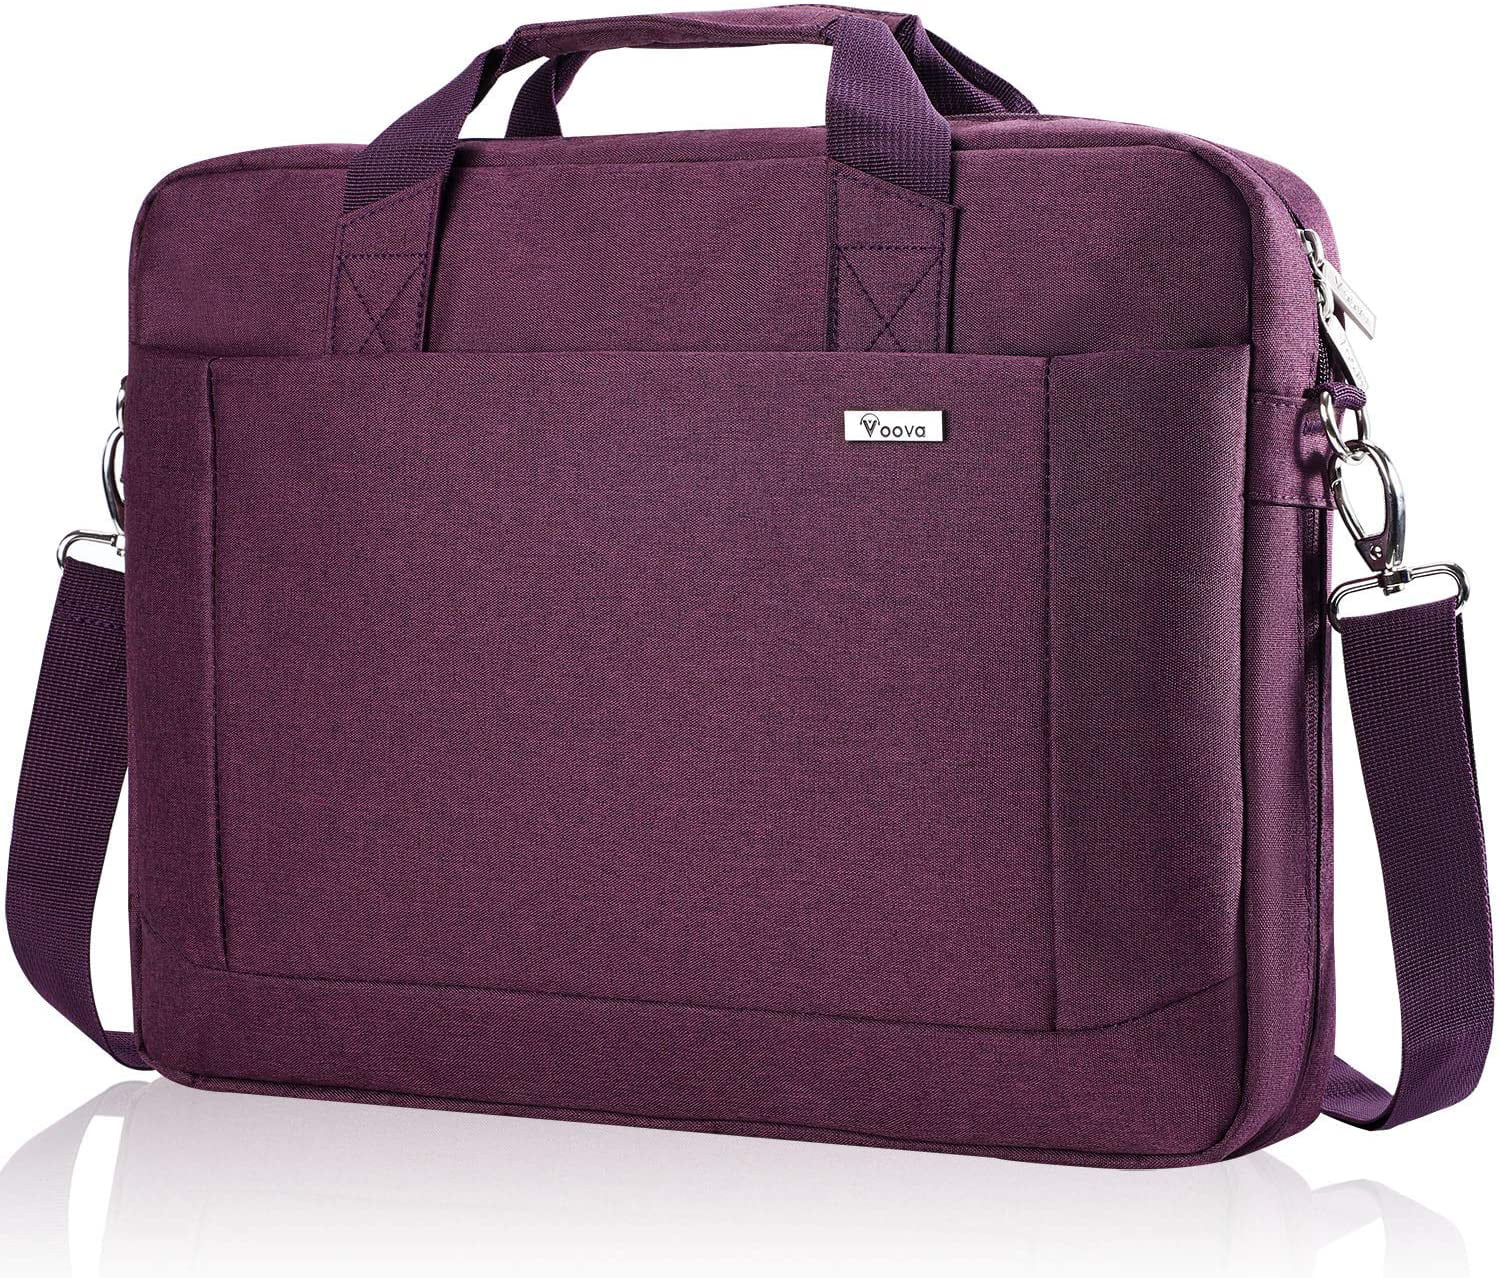 Laptop Shoulder Bag 15 Inch Briefcase Document Messenger Bag Business Handbag with Handle & Shoulder Strap Cow Skin Milk Pink and Black 